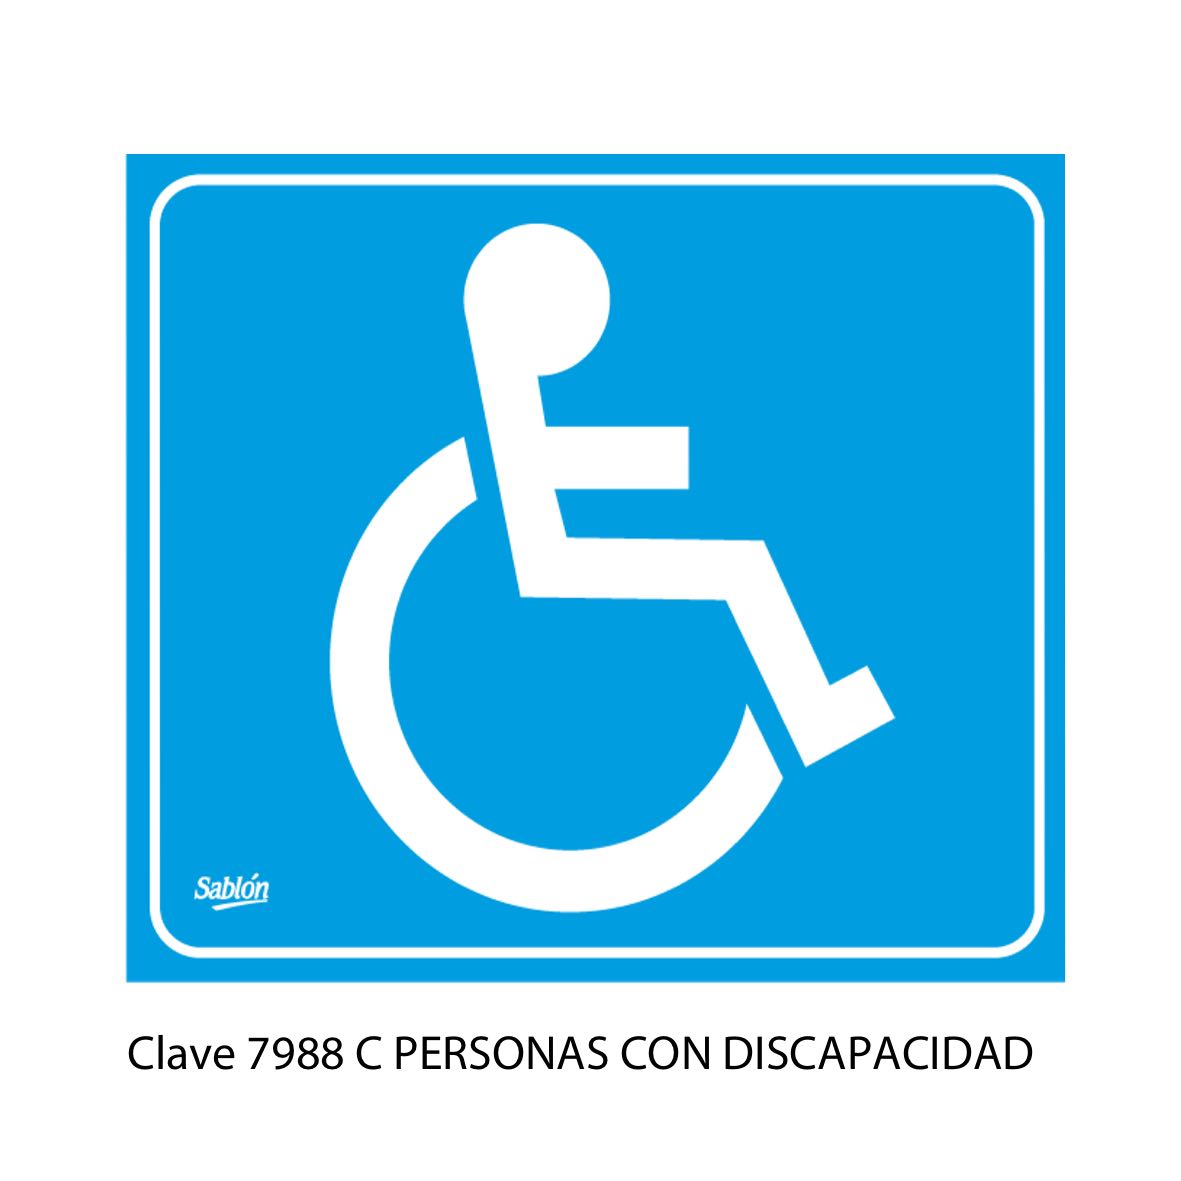 Señal de Personas con Discapacidad Modelo 7988 C - Sablón